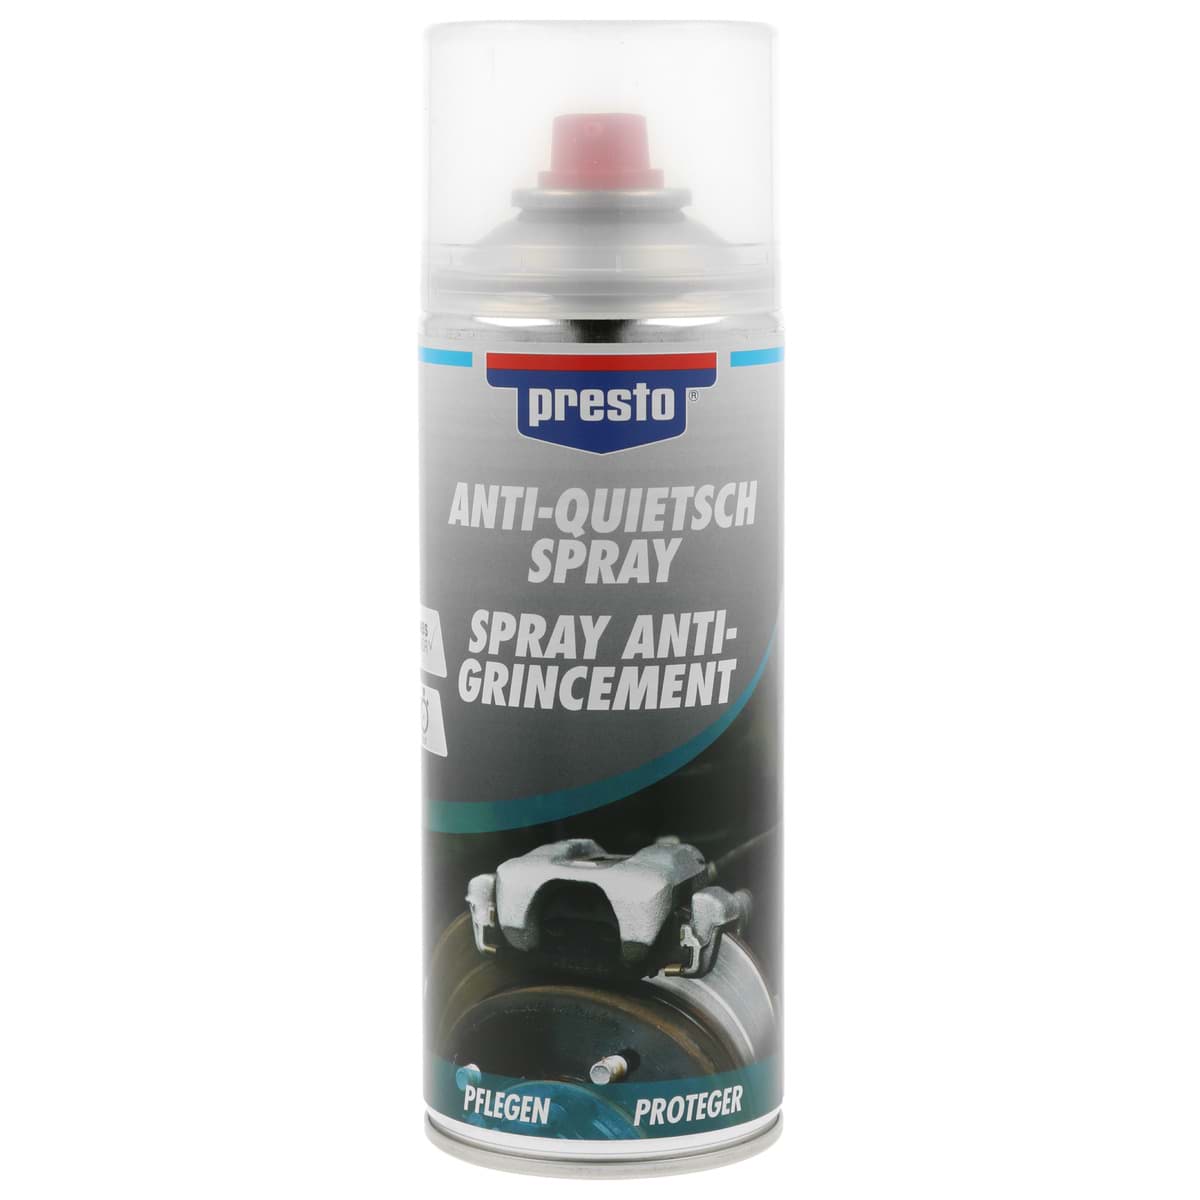 Afbeelding van Presto Anti Quietsch Spray Bremsen Wartungs Spray 400ml